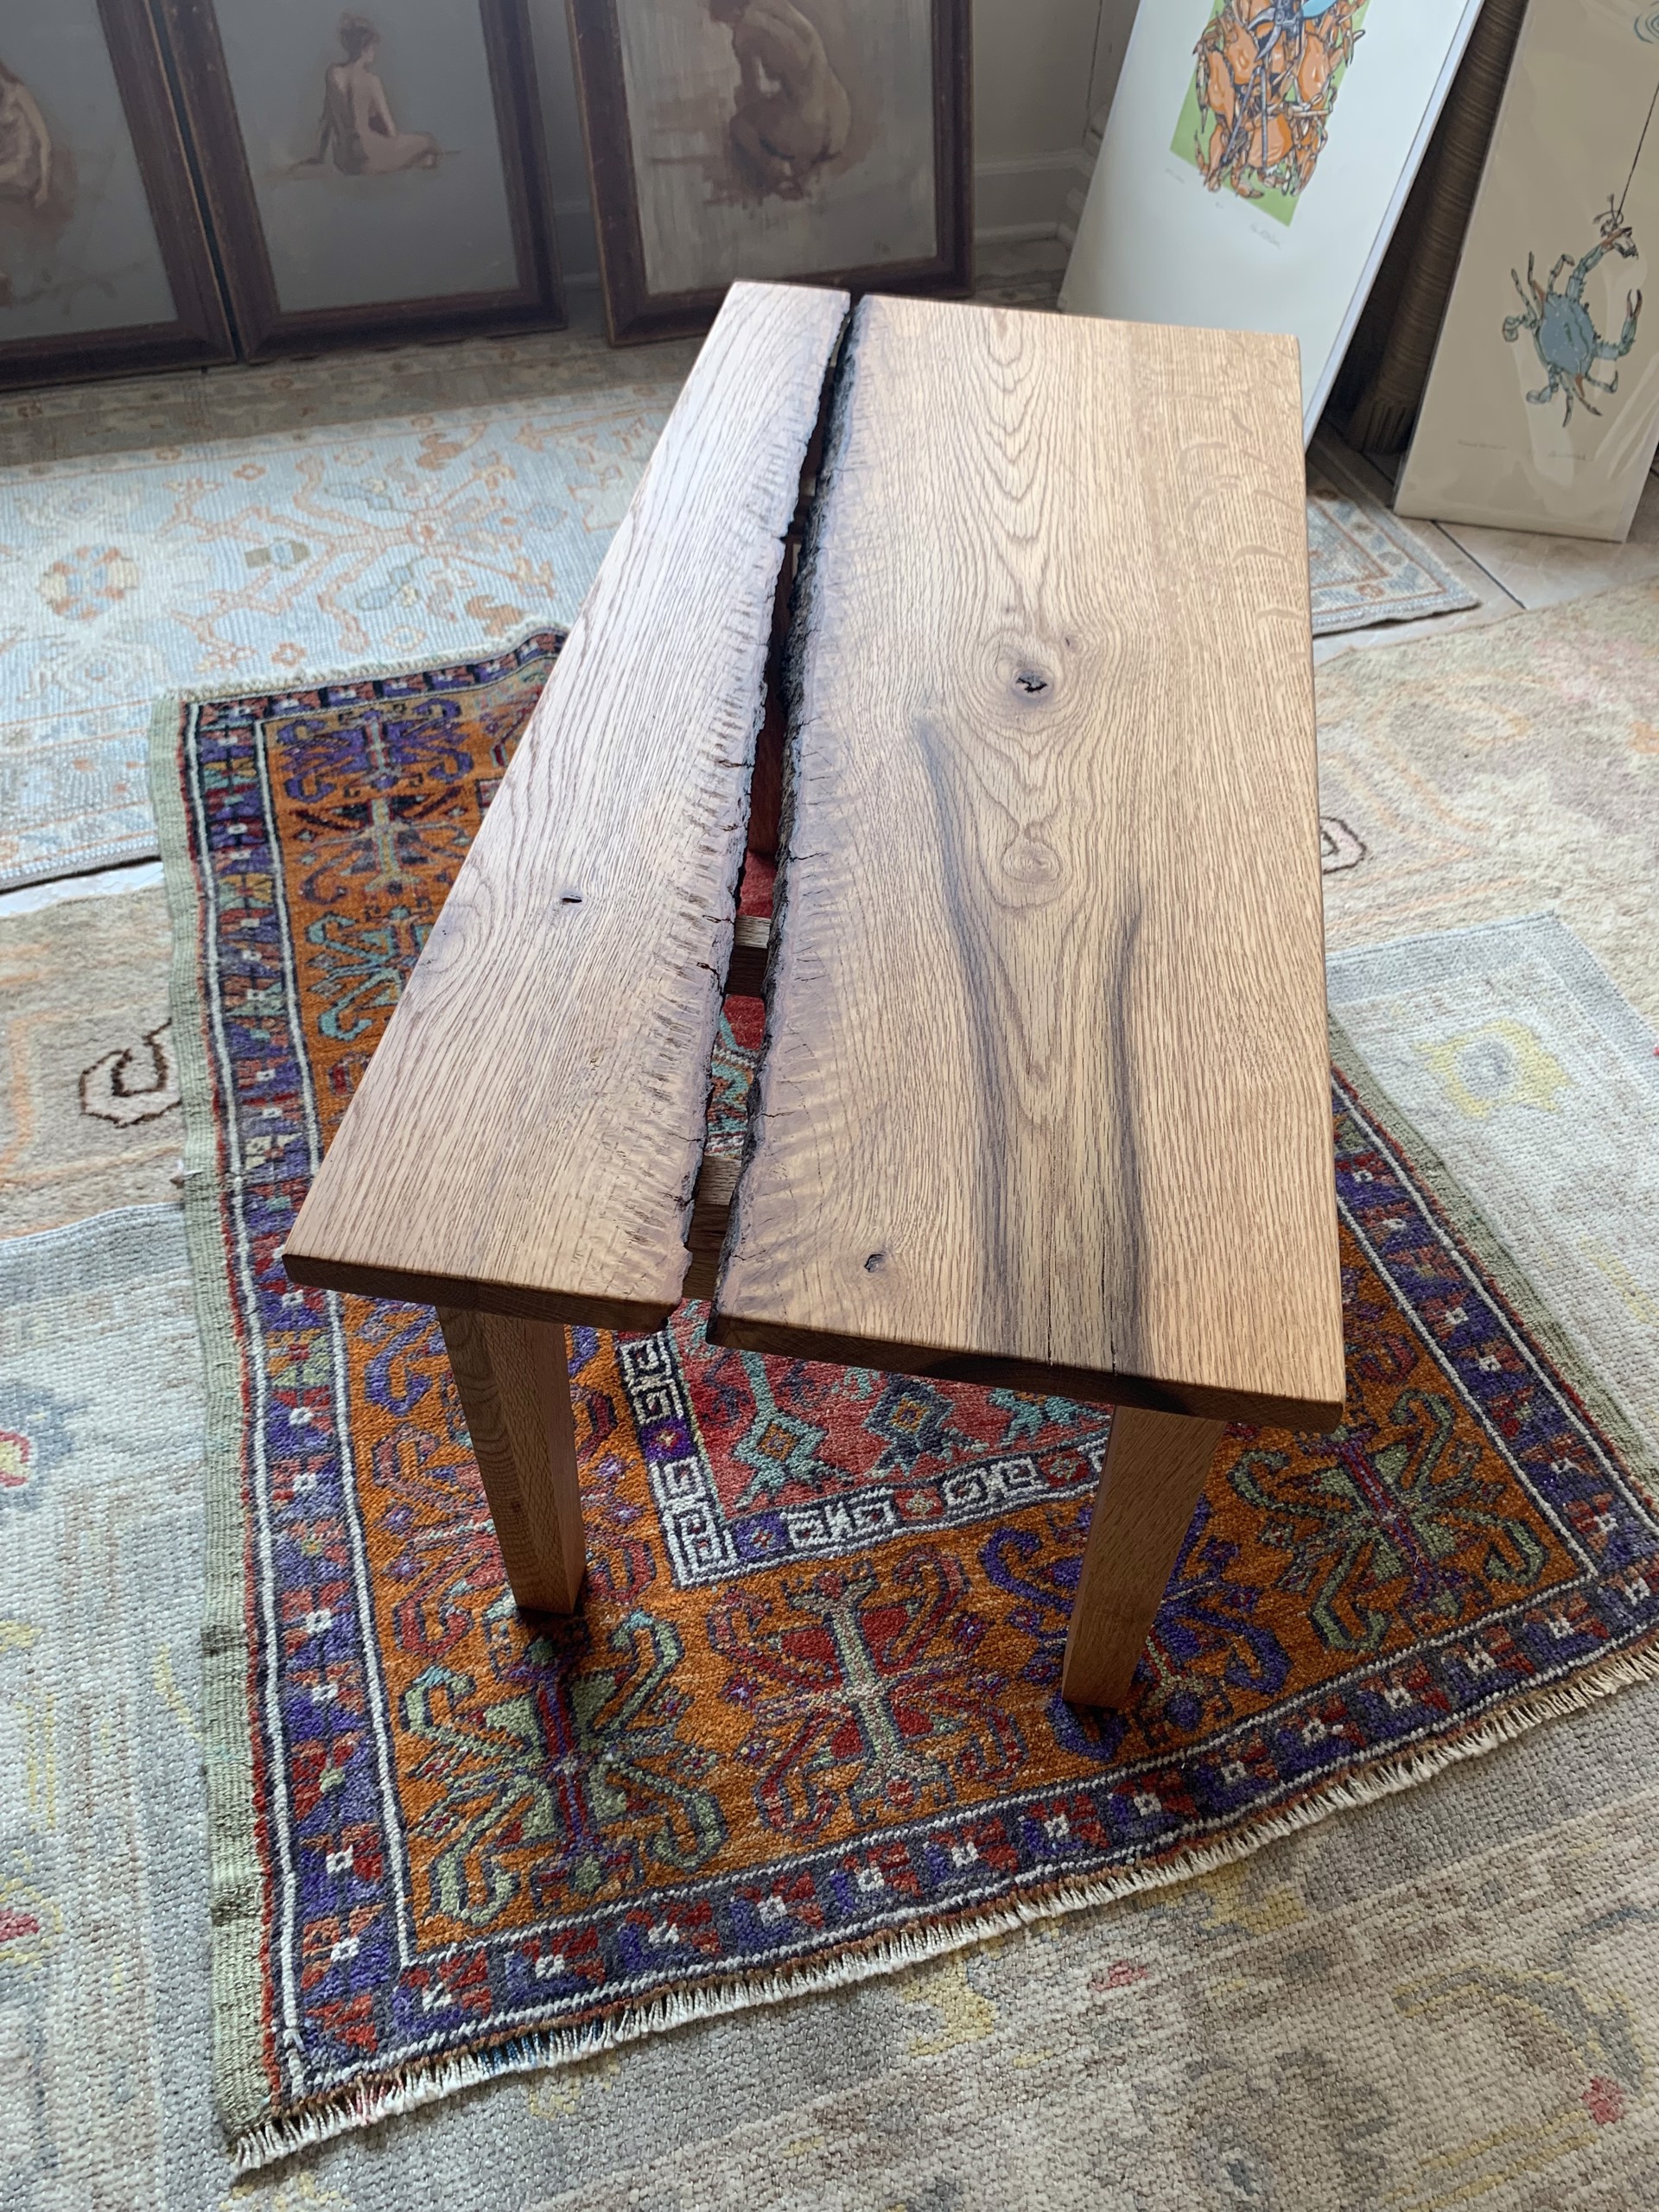 White oak bench/table by NIcholas Blake